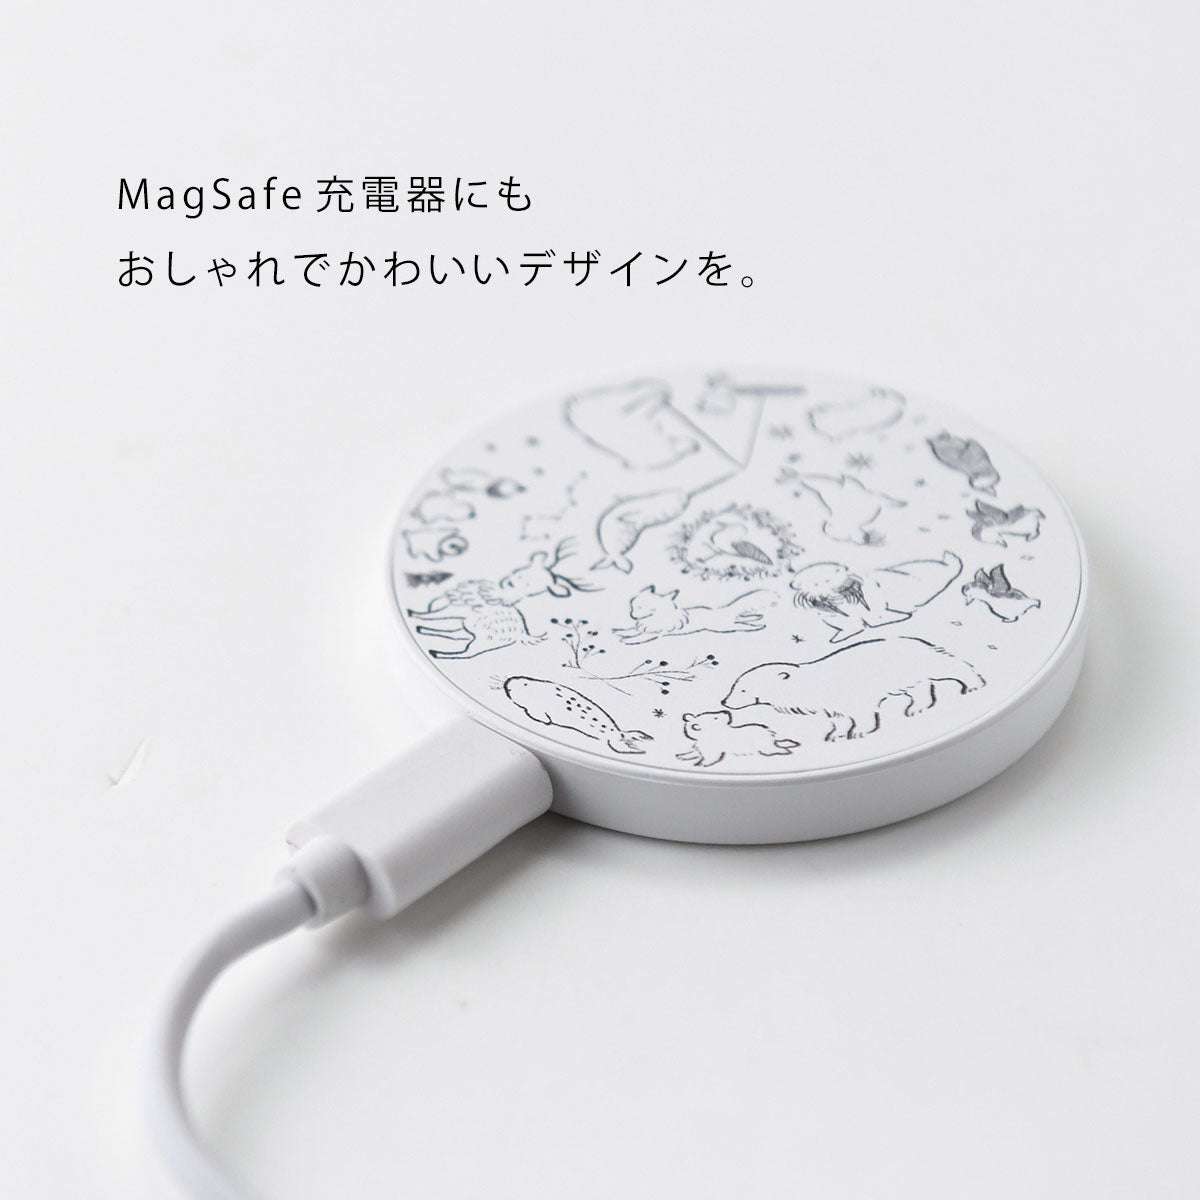 MagSafe 充電器 おしゃれ マグセーフ充電器 iPhone13 pro iPhone12 qi 充電器 おにぎり